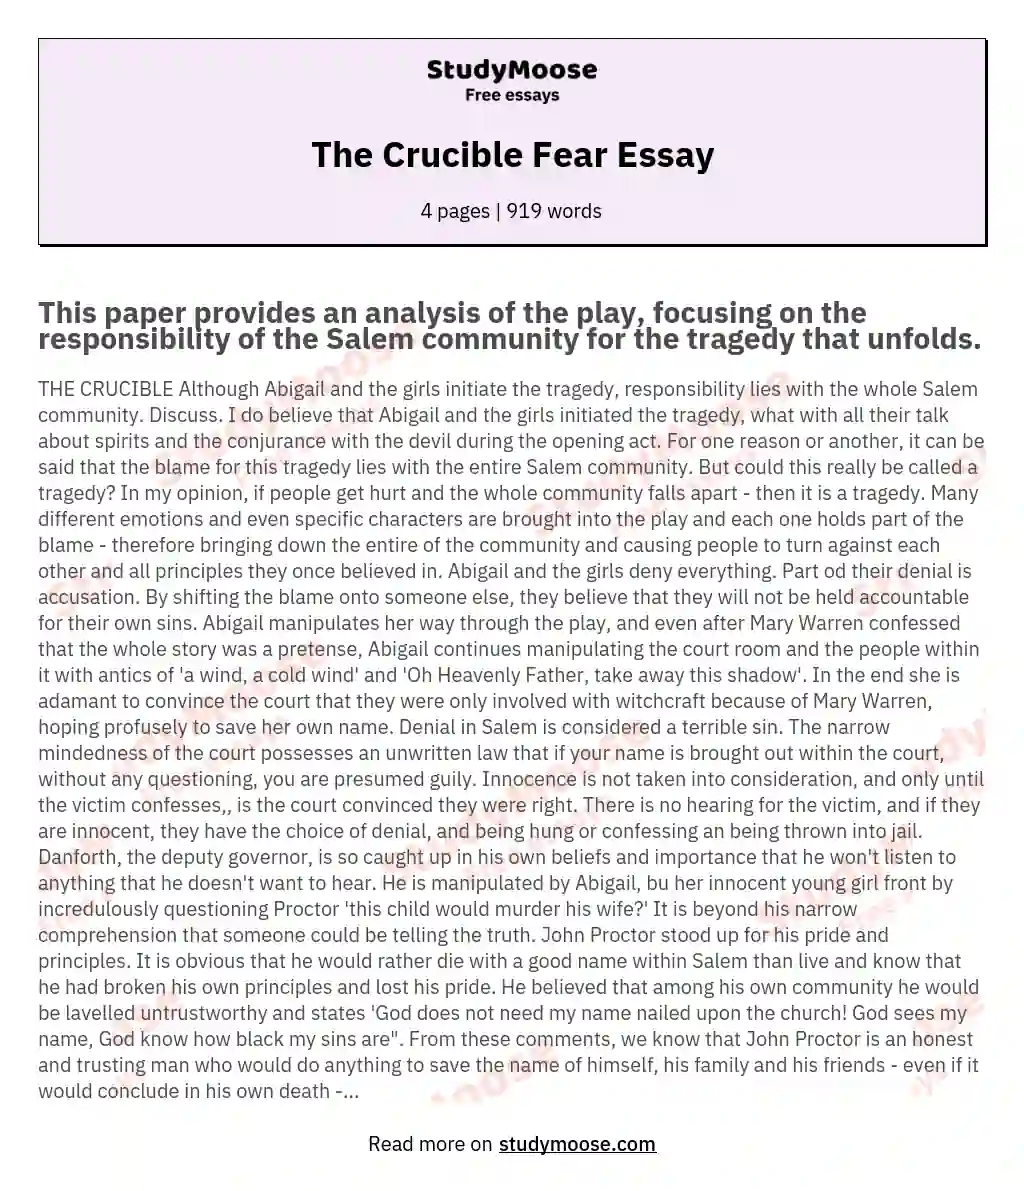 The Crucible Fear Essay